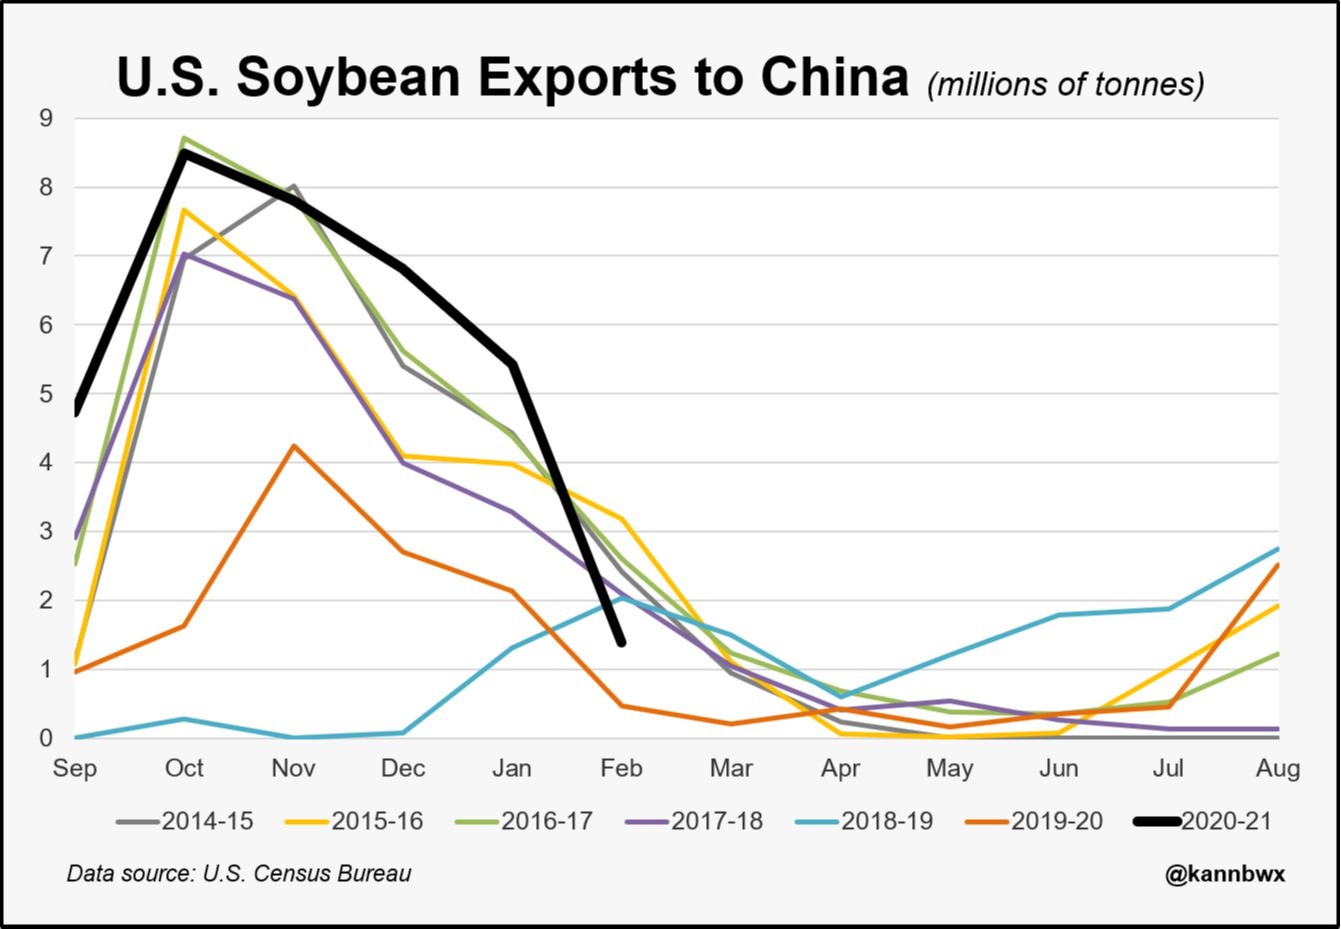 Exportações soja EUA - China Fev21